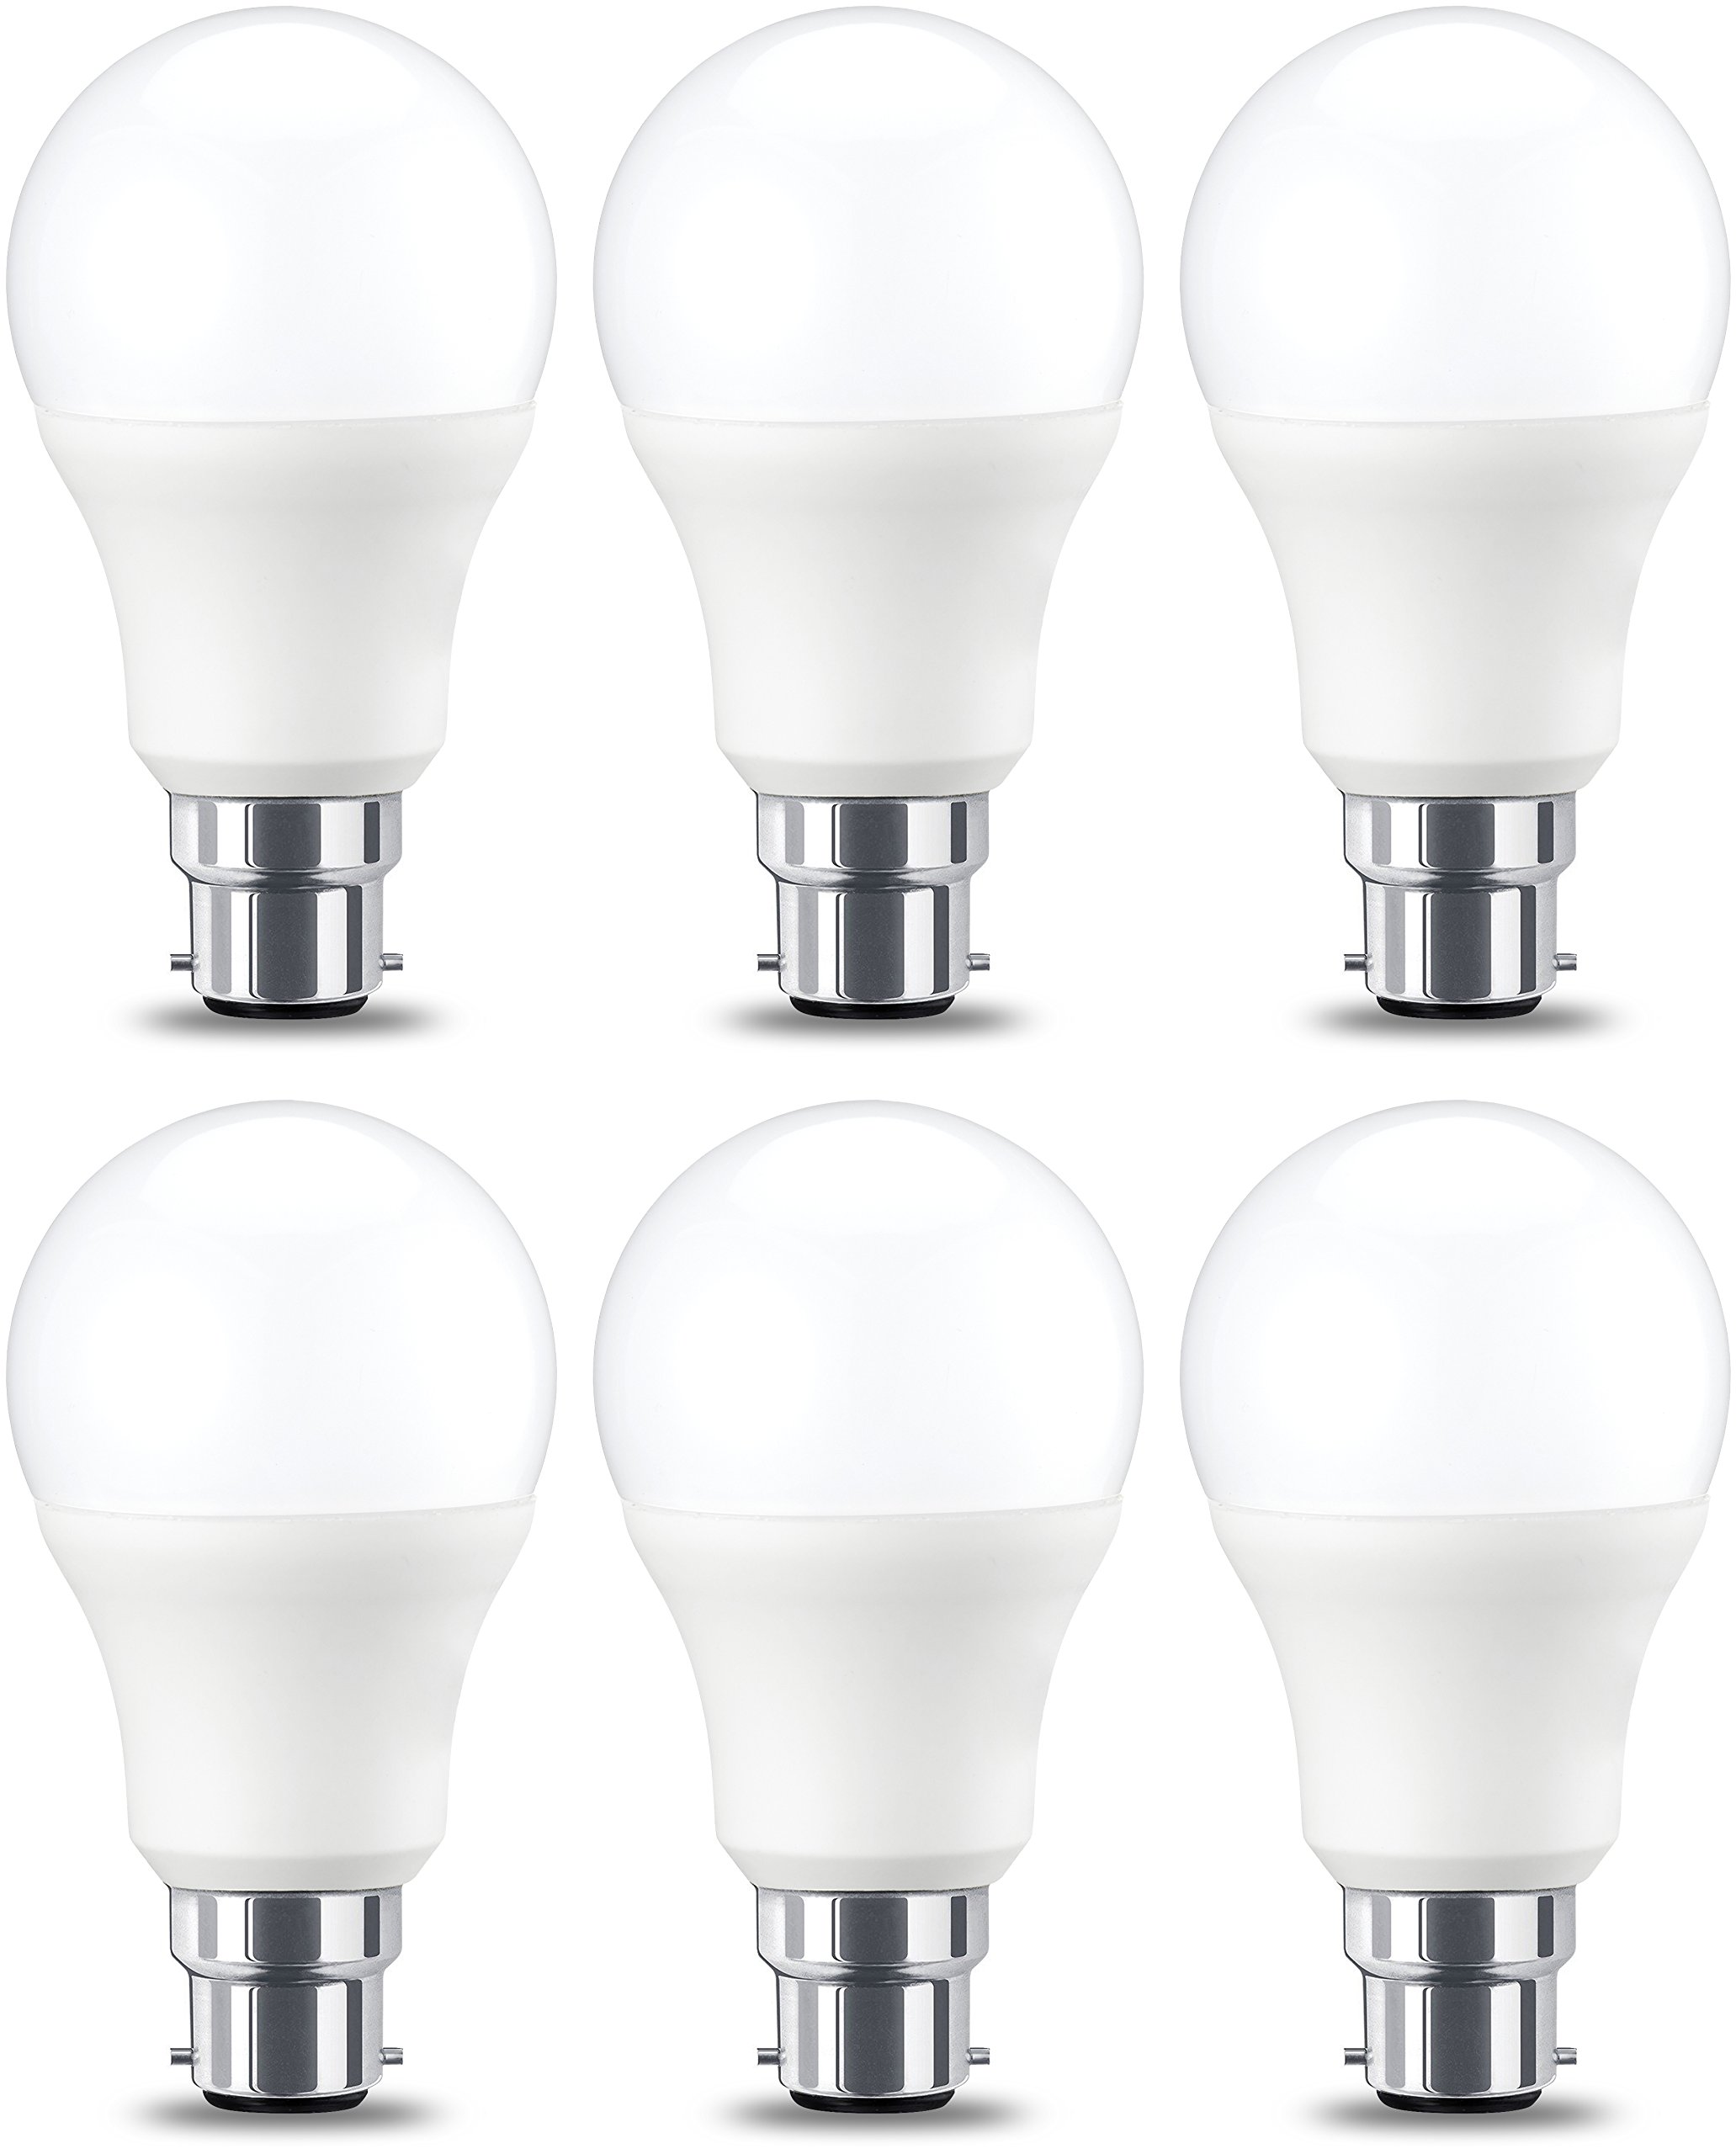 grande remise Amazon Basics Ampoule LED à baïonnette B22 A60, 9W (équivalent ampoule incandescente de 60W), blanc chaud, dimmable - Lot de 6 YgNSxbWkg Haute Quaity